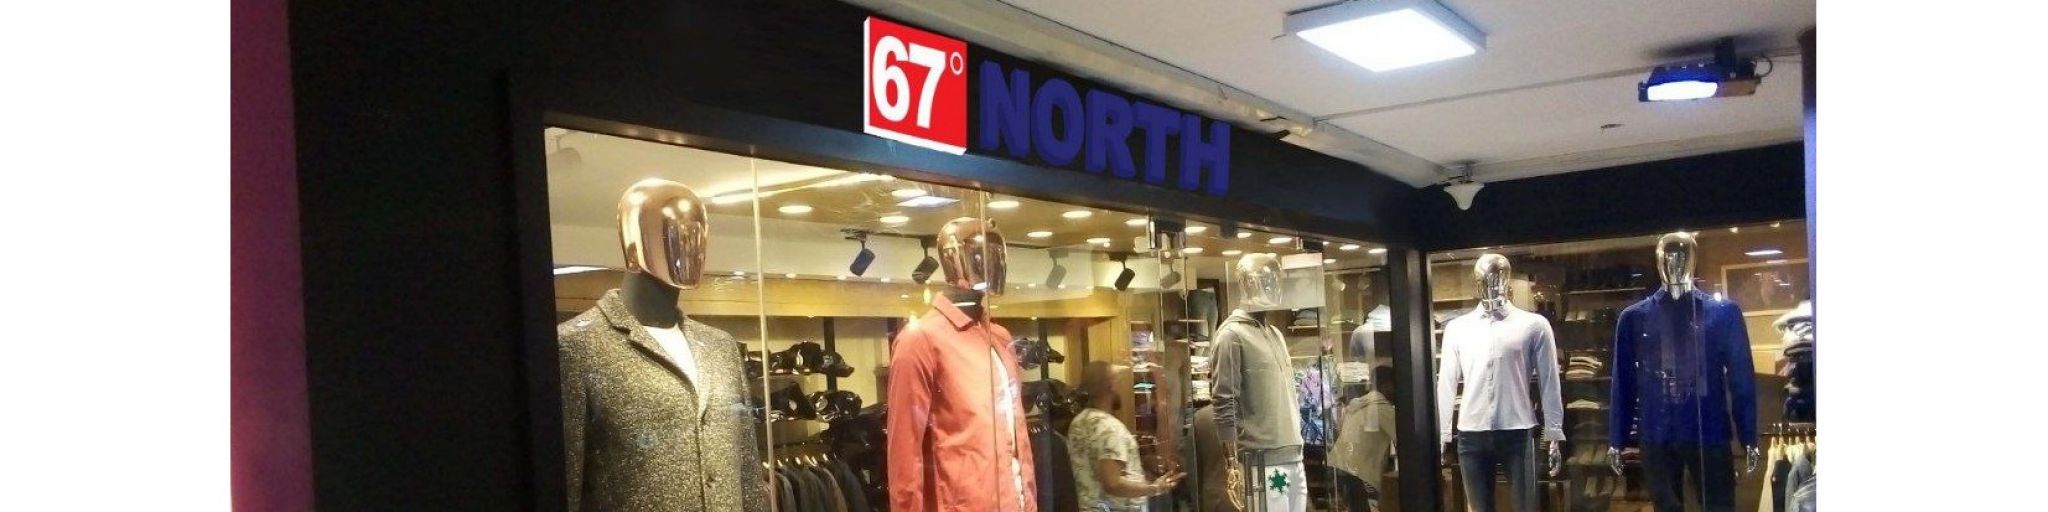 67 North